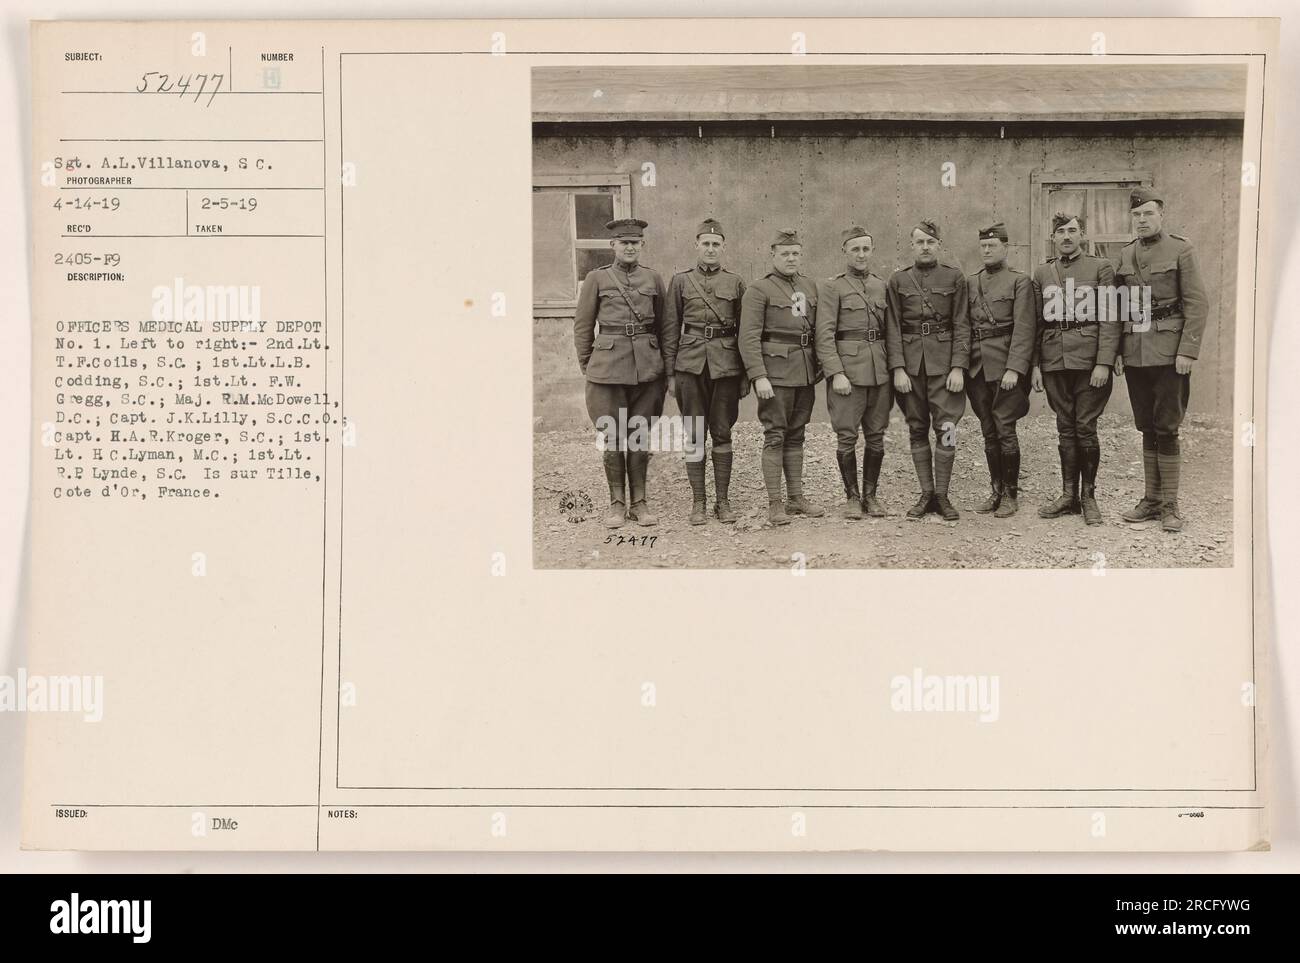 Offiziere im Medical Supply Depot, Nr. 1 in Sur D'Or, Frankreich. Abbildung von links nach rechts: 2. LT. T. F. Coils, S.C.; 1. LT. L.B. Codding, S.C.; 1. LT. P.W. Gregg, S.C.; Maj. R.M. McDowell, D.C.; Captain J.K. Lilly, S.C.C.O.; Captain H.A.R. Kroger, S.C.; 1. LT. H.C. Lyman, M.C.; 1. LT. P.P. Lynde, S.C. Aufgenommen am 4-14-19. Stockfoto